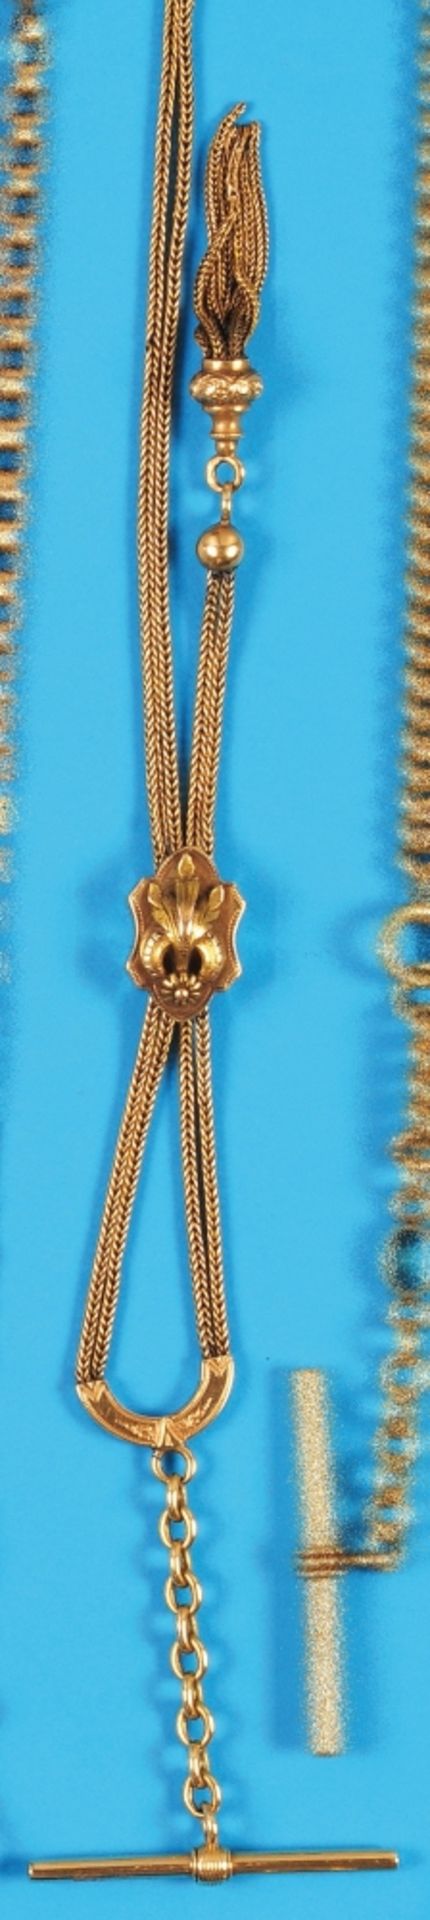 Golden pocket watch chain